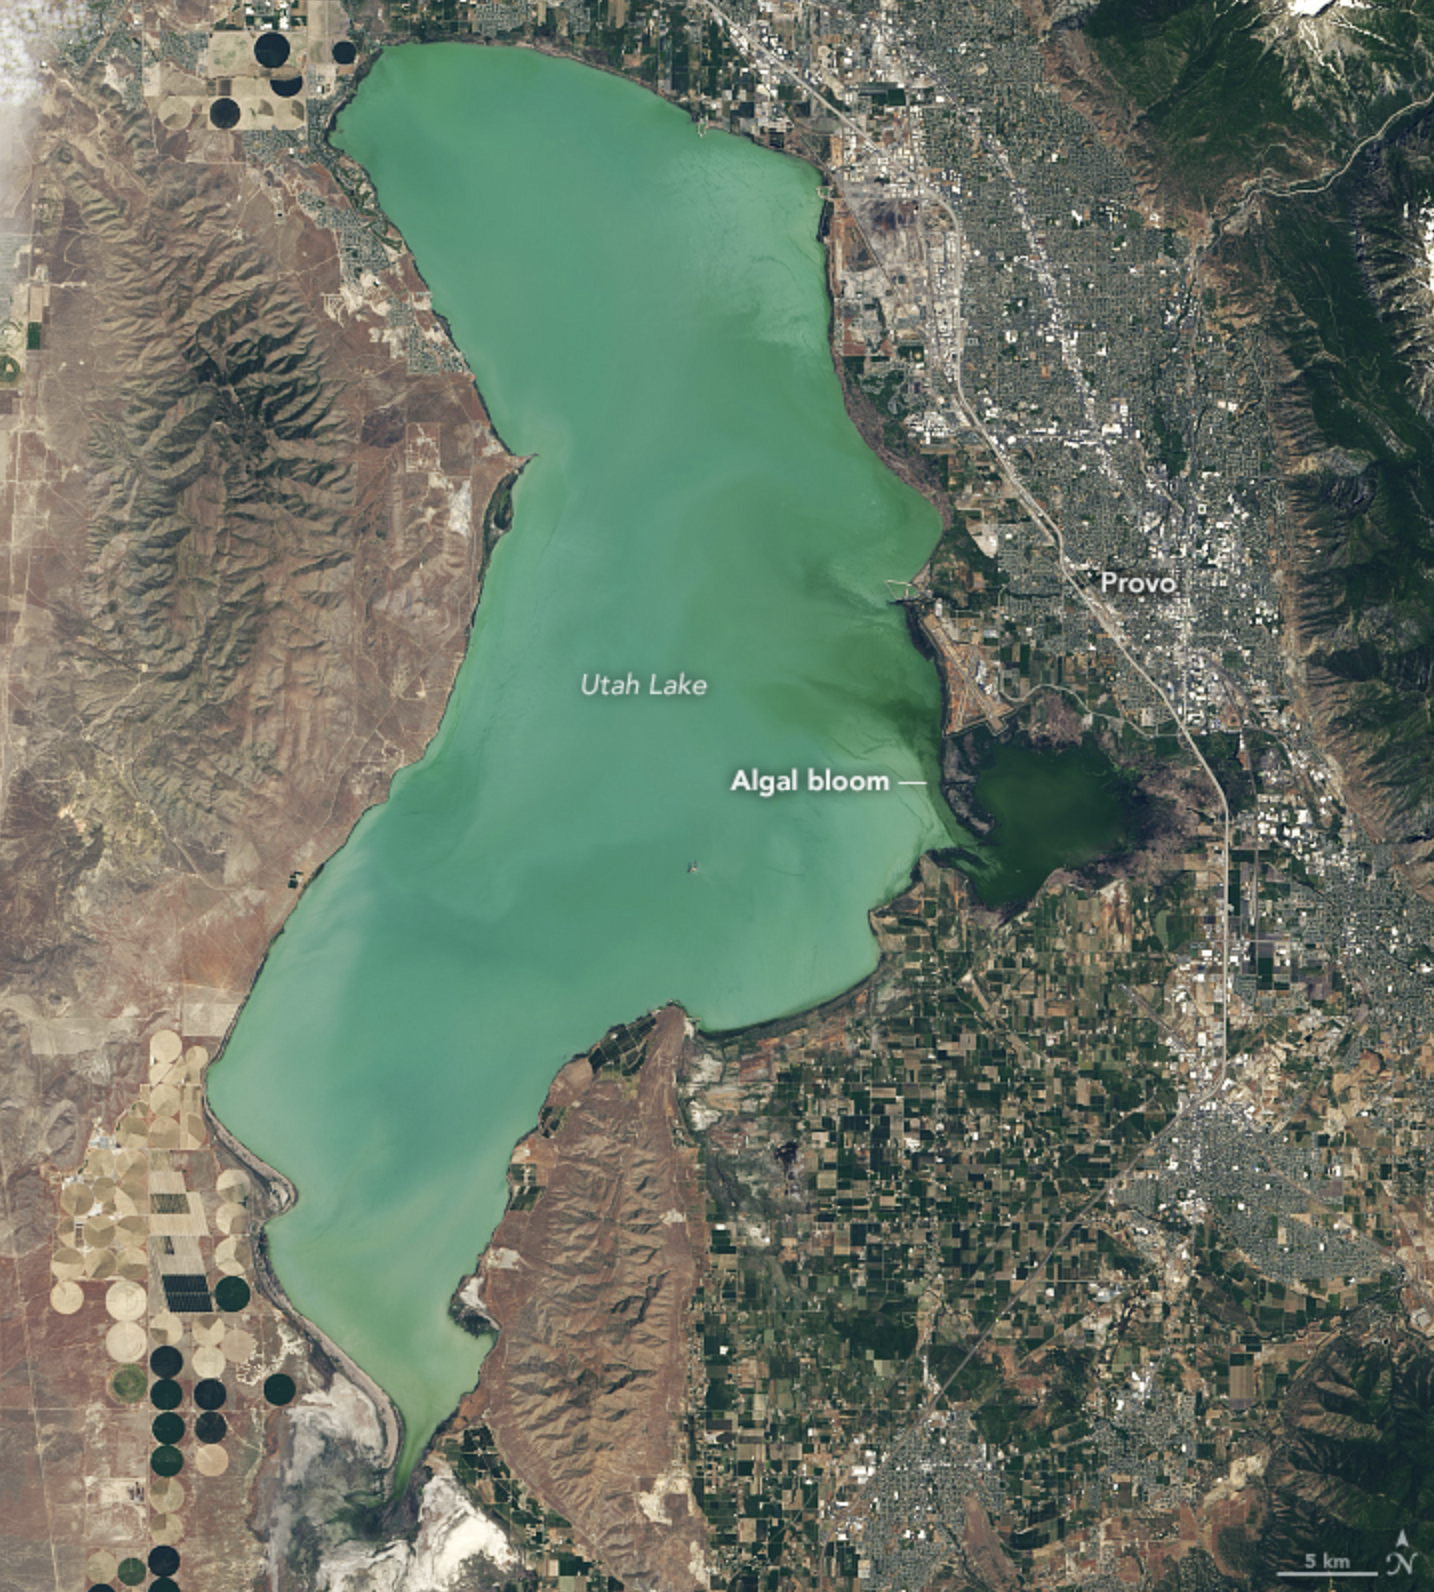 Satellite image of an algal bloom in Utah Lake on June 20, 2017.